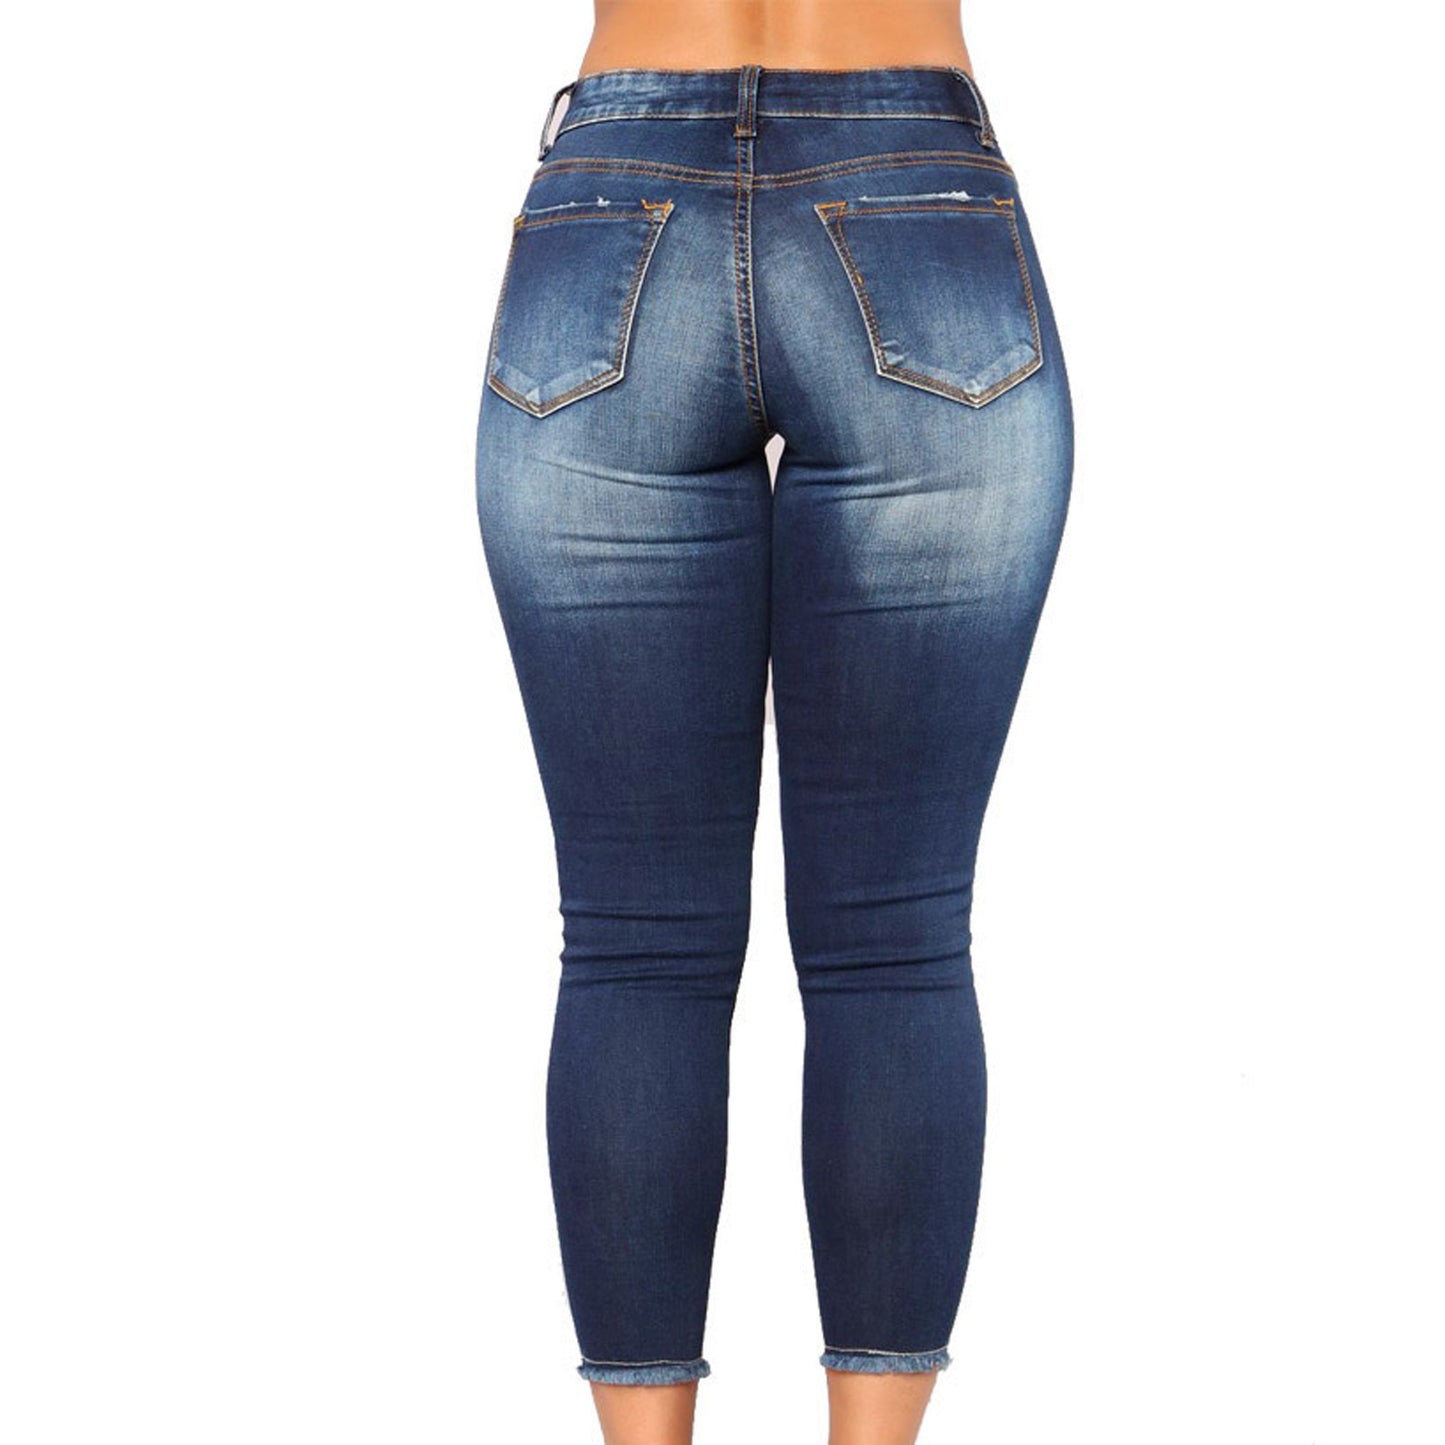 Leisure High Waist Broken Hole Women Denim Jeans